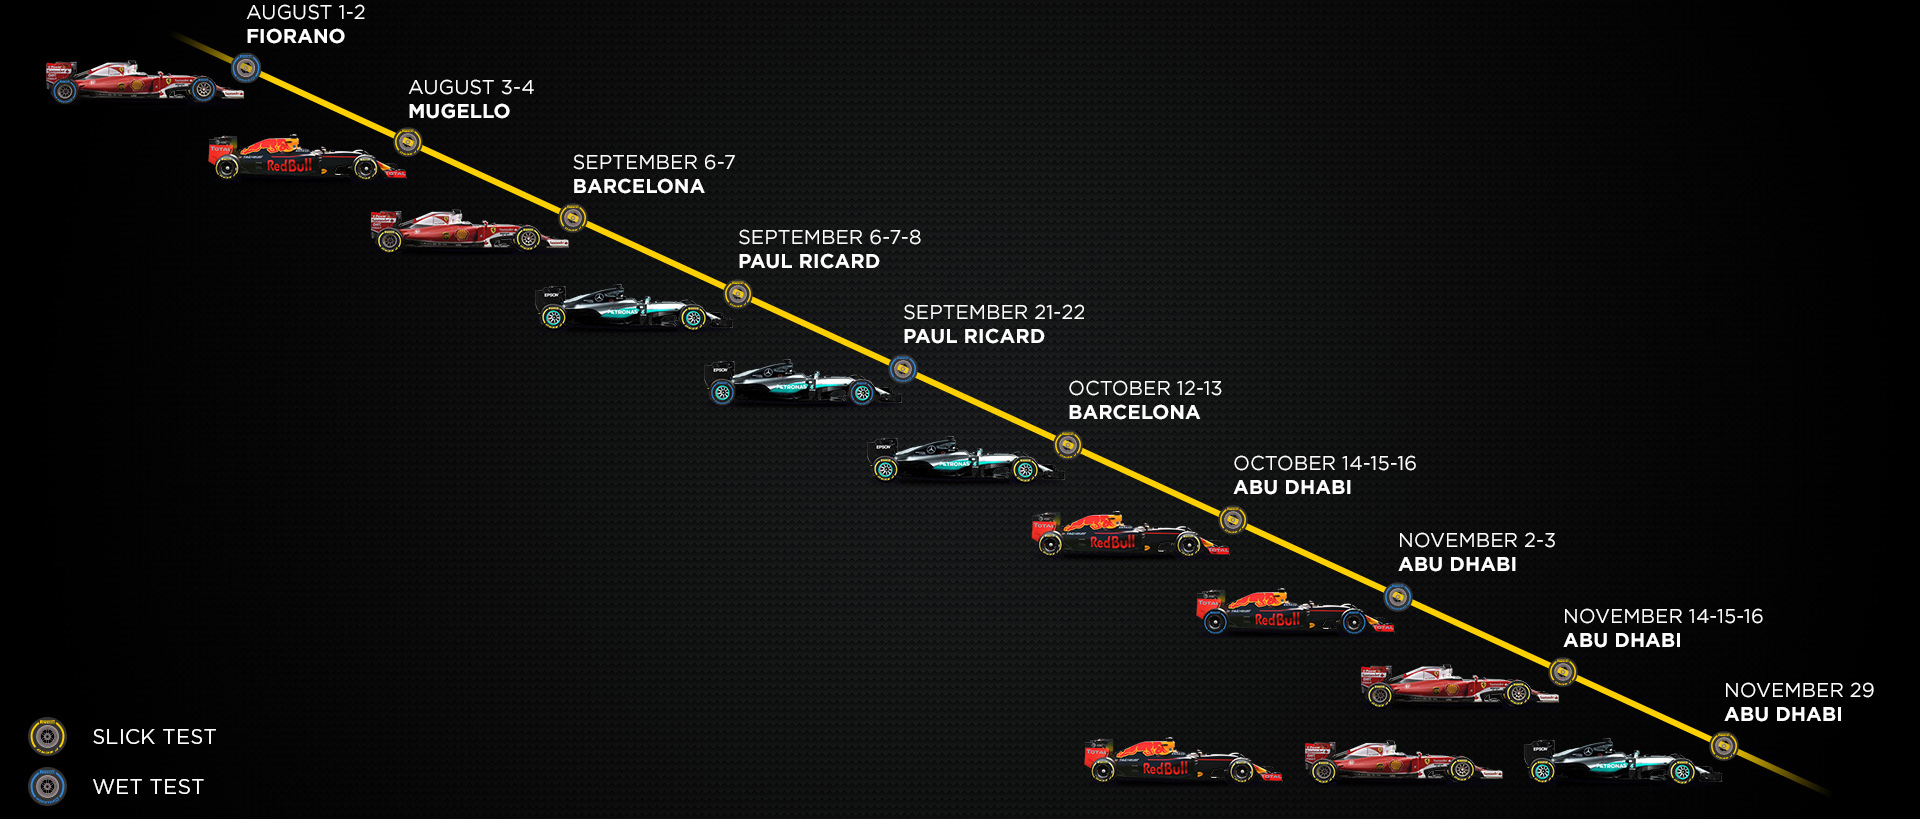 Plán Pirelli na testování širších pneumatik pro rok 2017 - Red Bull pro ně bude testovat s upraveným loňským vozem RB11 3. a 4. srpna v Mugellu